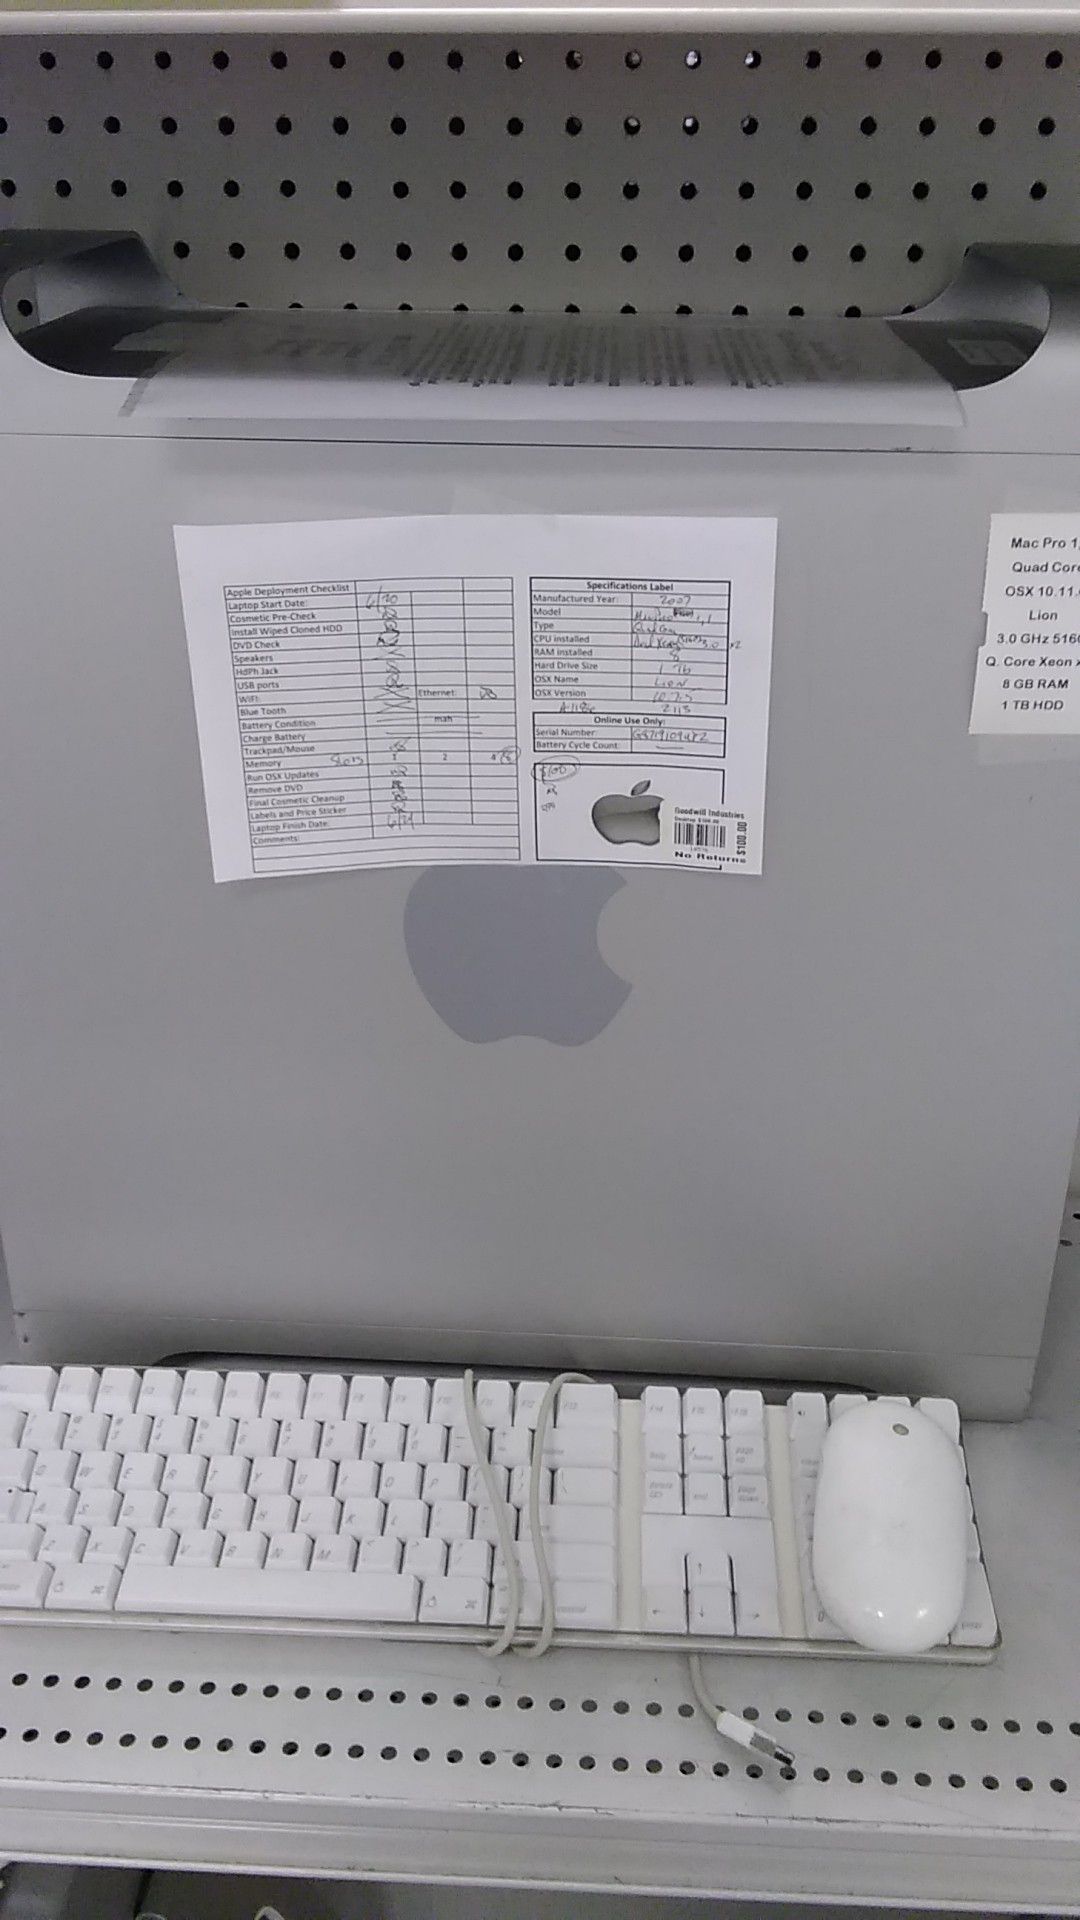 Apple Mac Pro 1,1